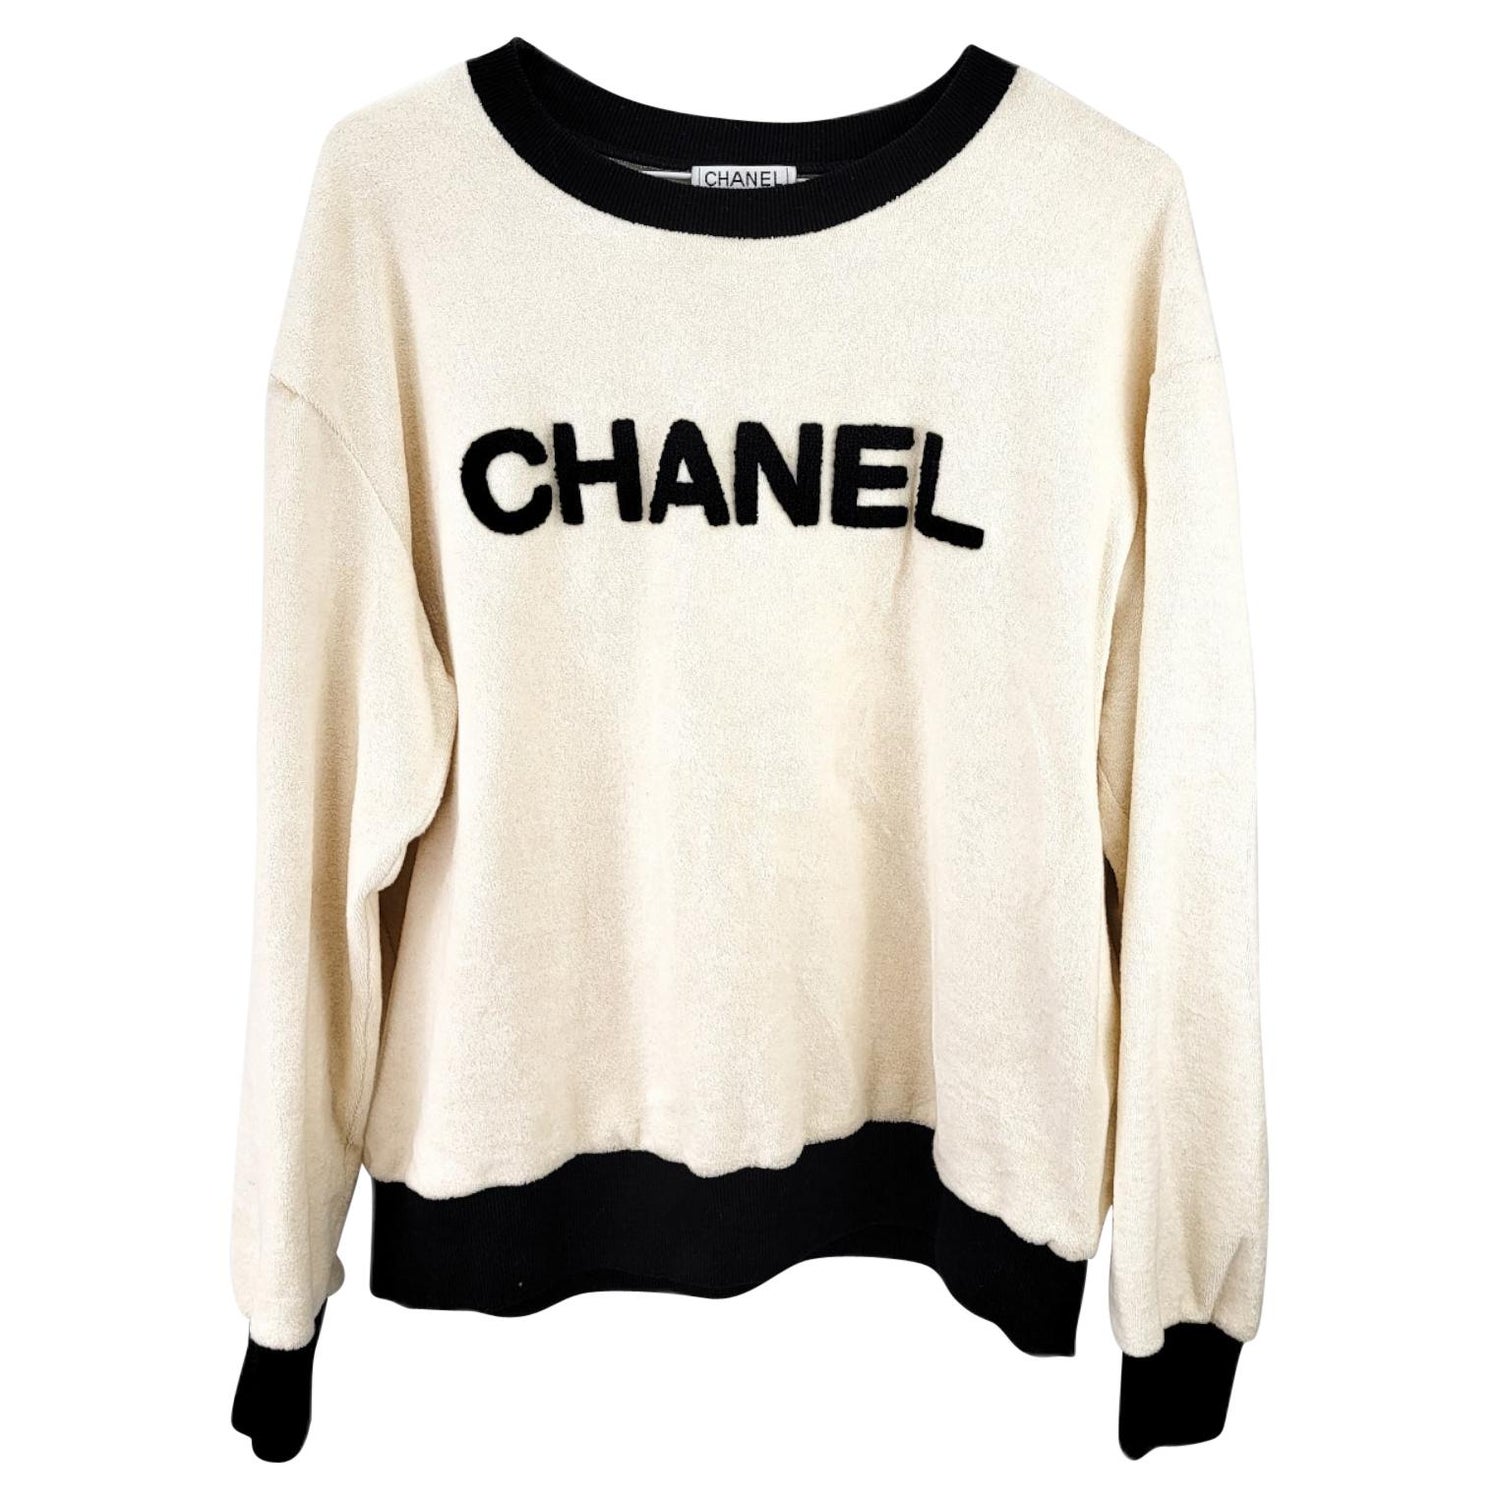 Chanel Vintage Sweatshirt - For Sale on 1stDibs | chanel sweatshirt vintage,  chanel sweater vintage, authentic chanel sweatshirt